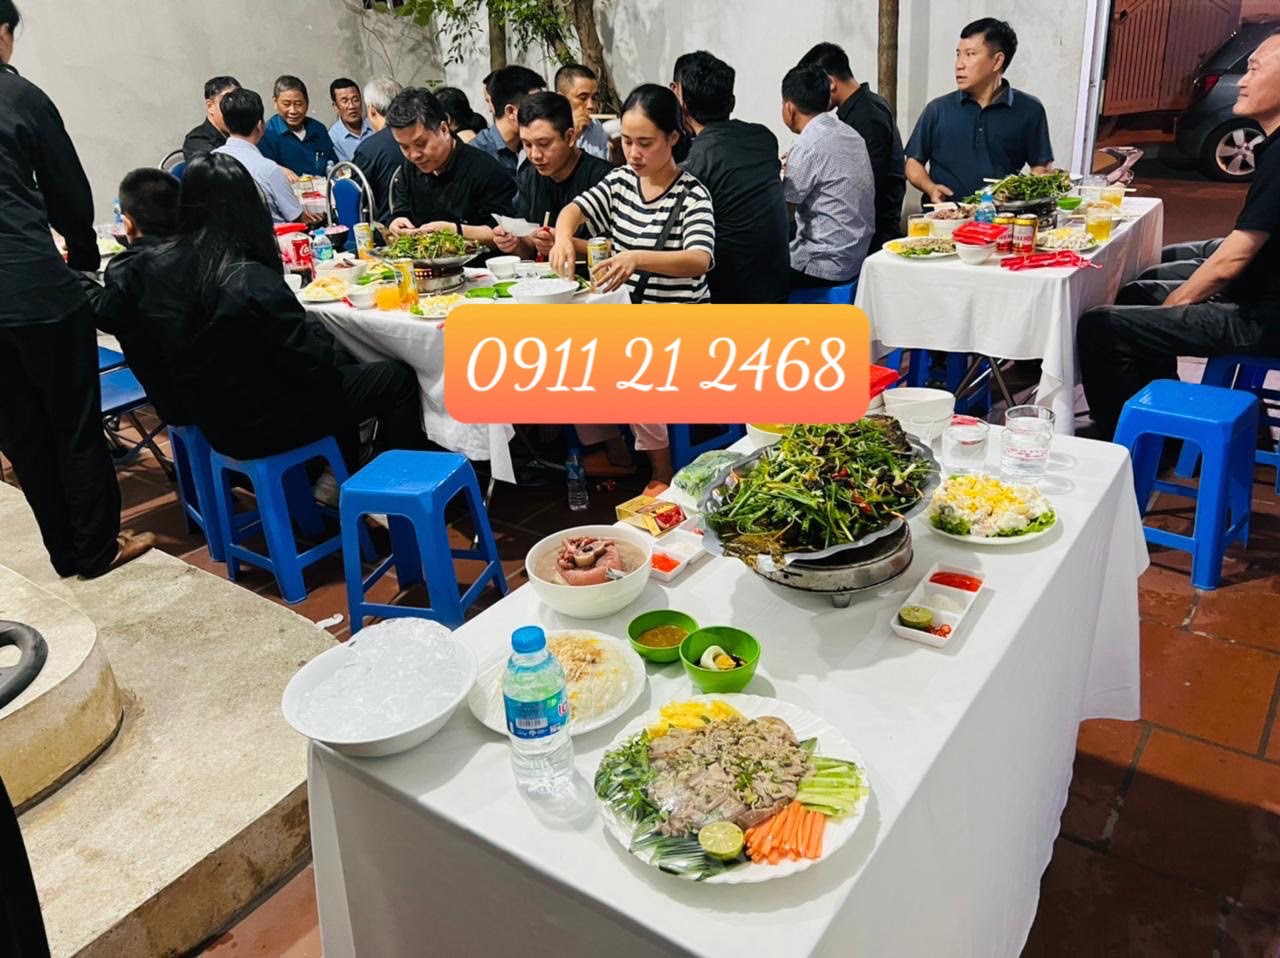 Phục vụ tiệc liên hoan gia đình tại nhà ở Hà Nội